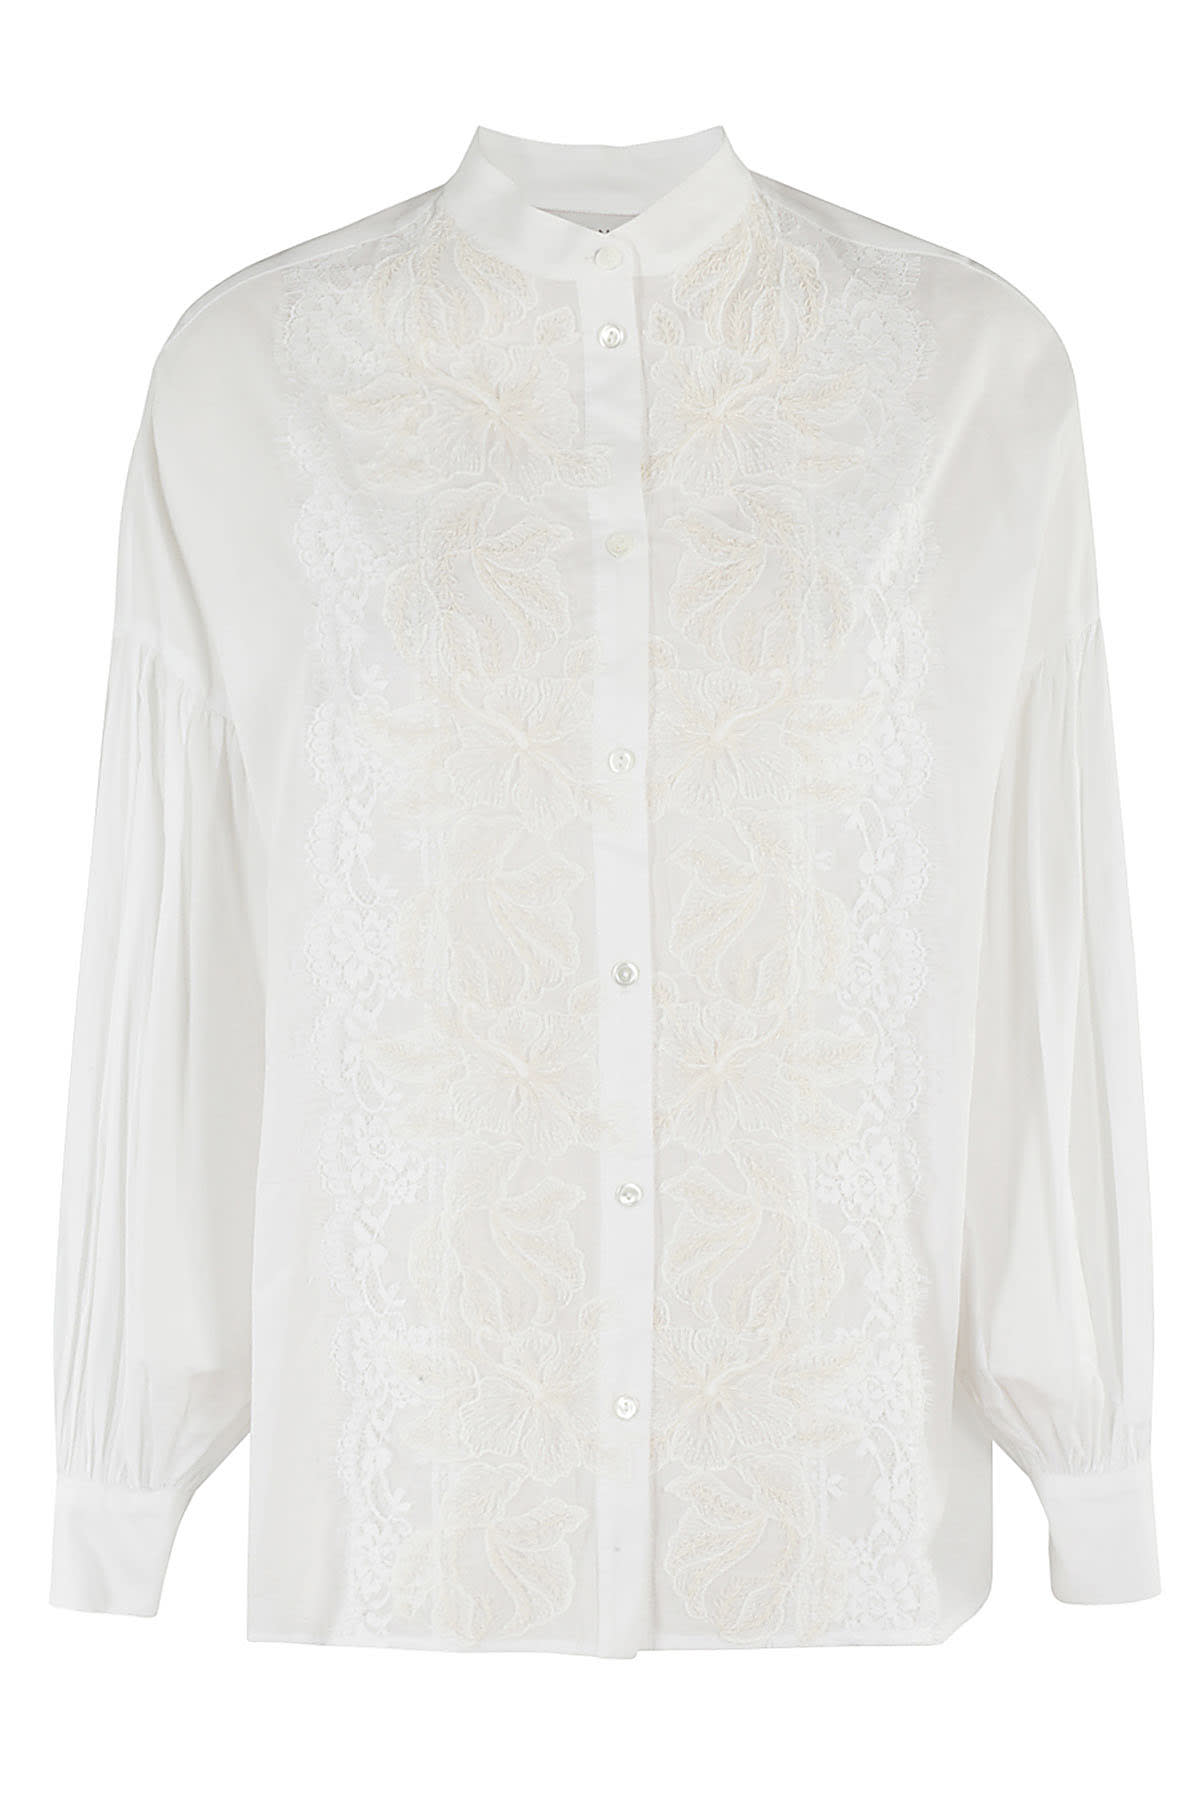 Ermanno Firenze Camicia In Bianco Off White